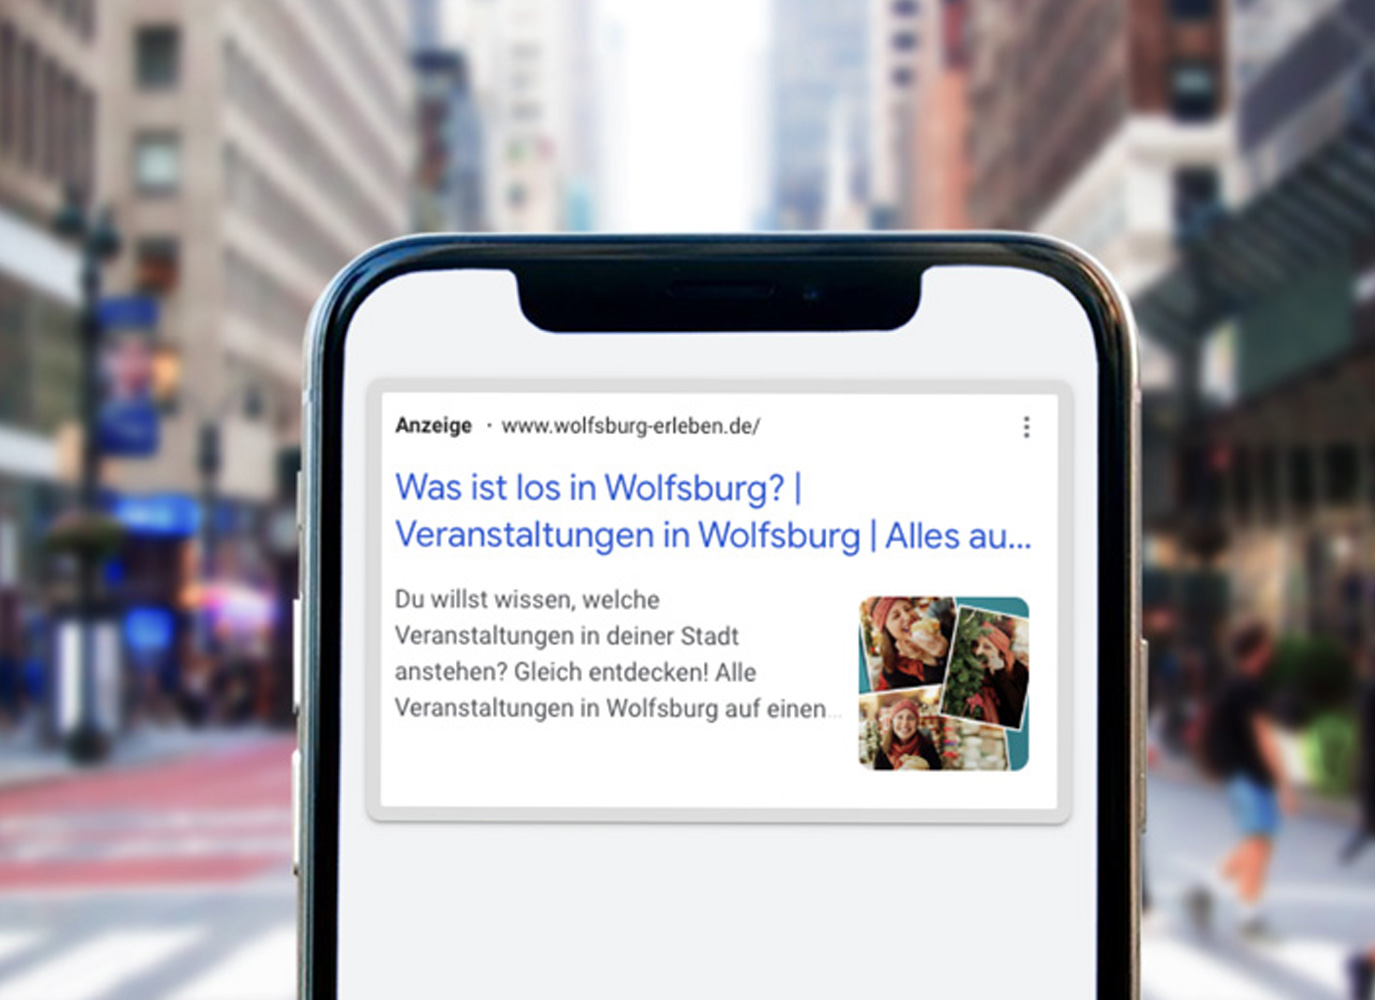 Google Ads Anzeige im Rahmen der Kampagne Wolfsburg erleben auf einem Smartphone